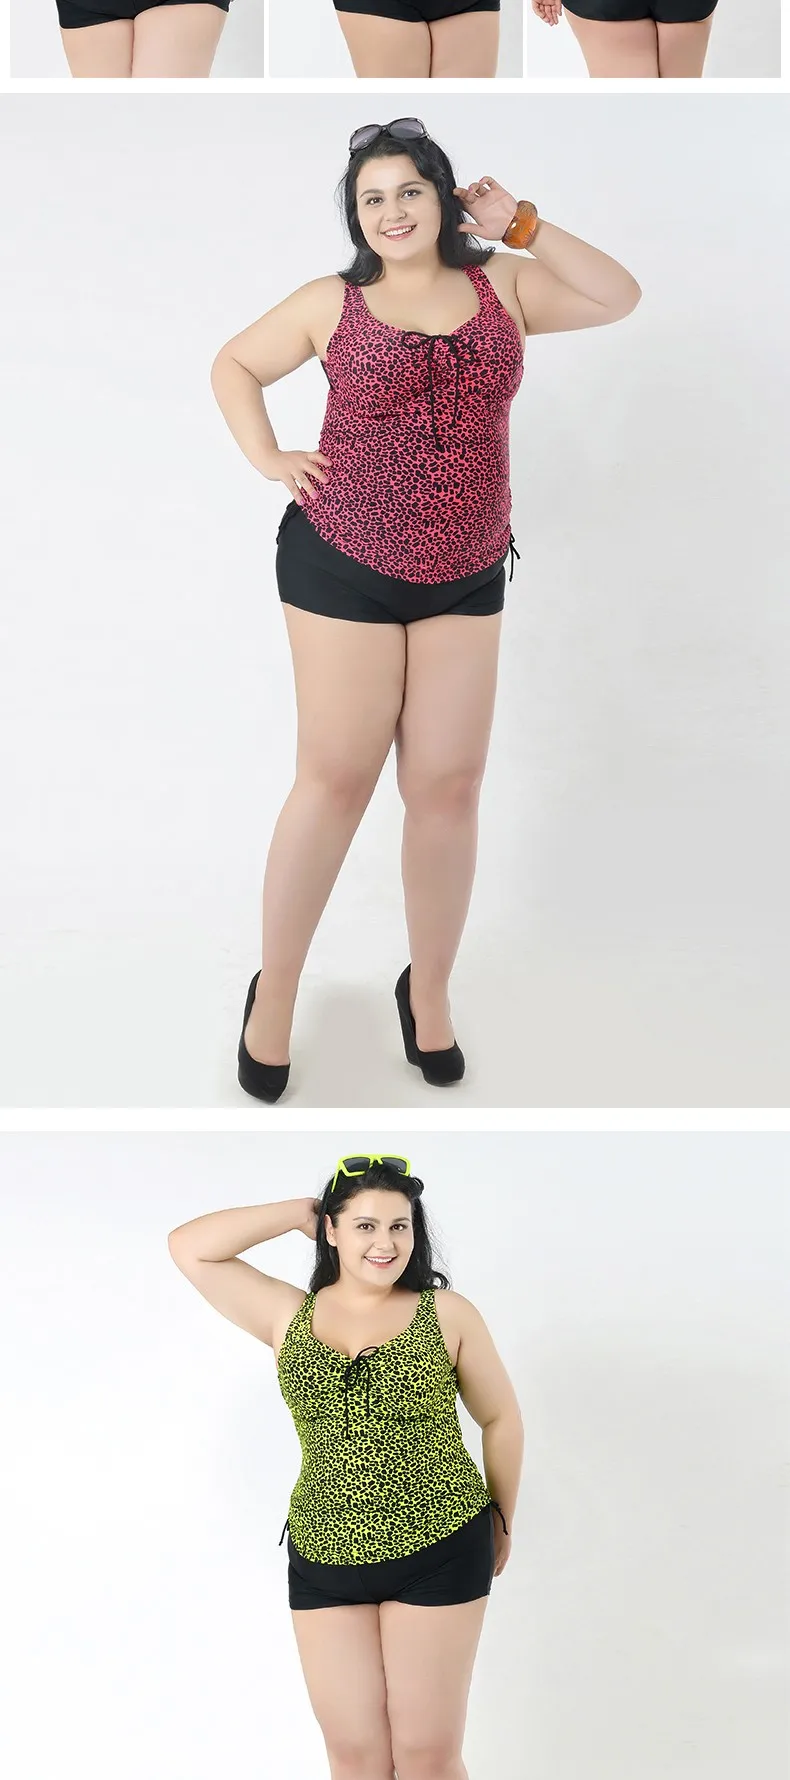 Женские Купальники большого размера пять цветов леопардовая одежда высококачественные гладкие ткани Seperate из двух частей купальник пляжная одежда